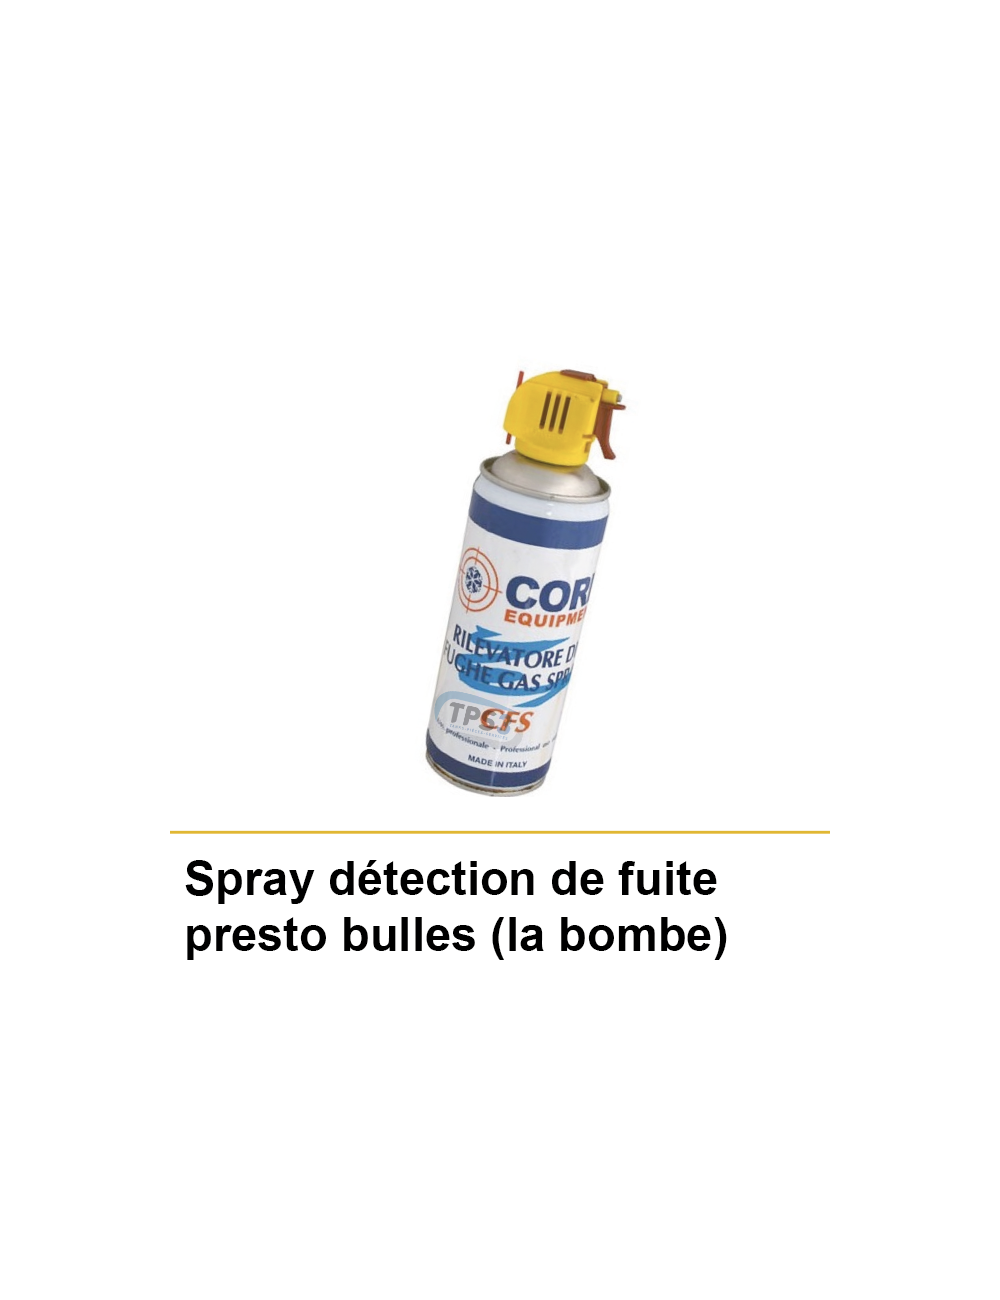 Spray détection de fuite presto bulles (la bombe)